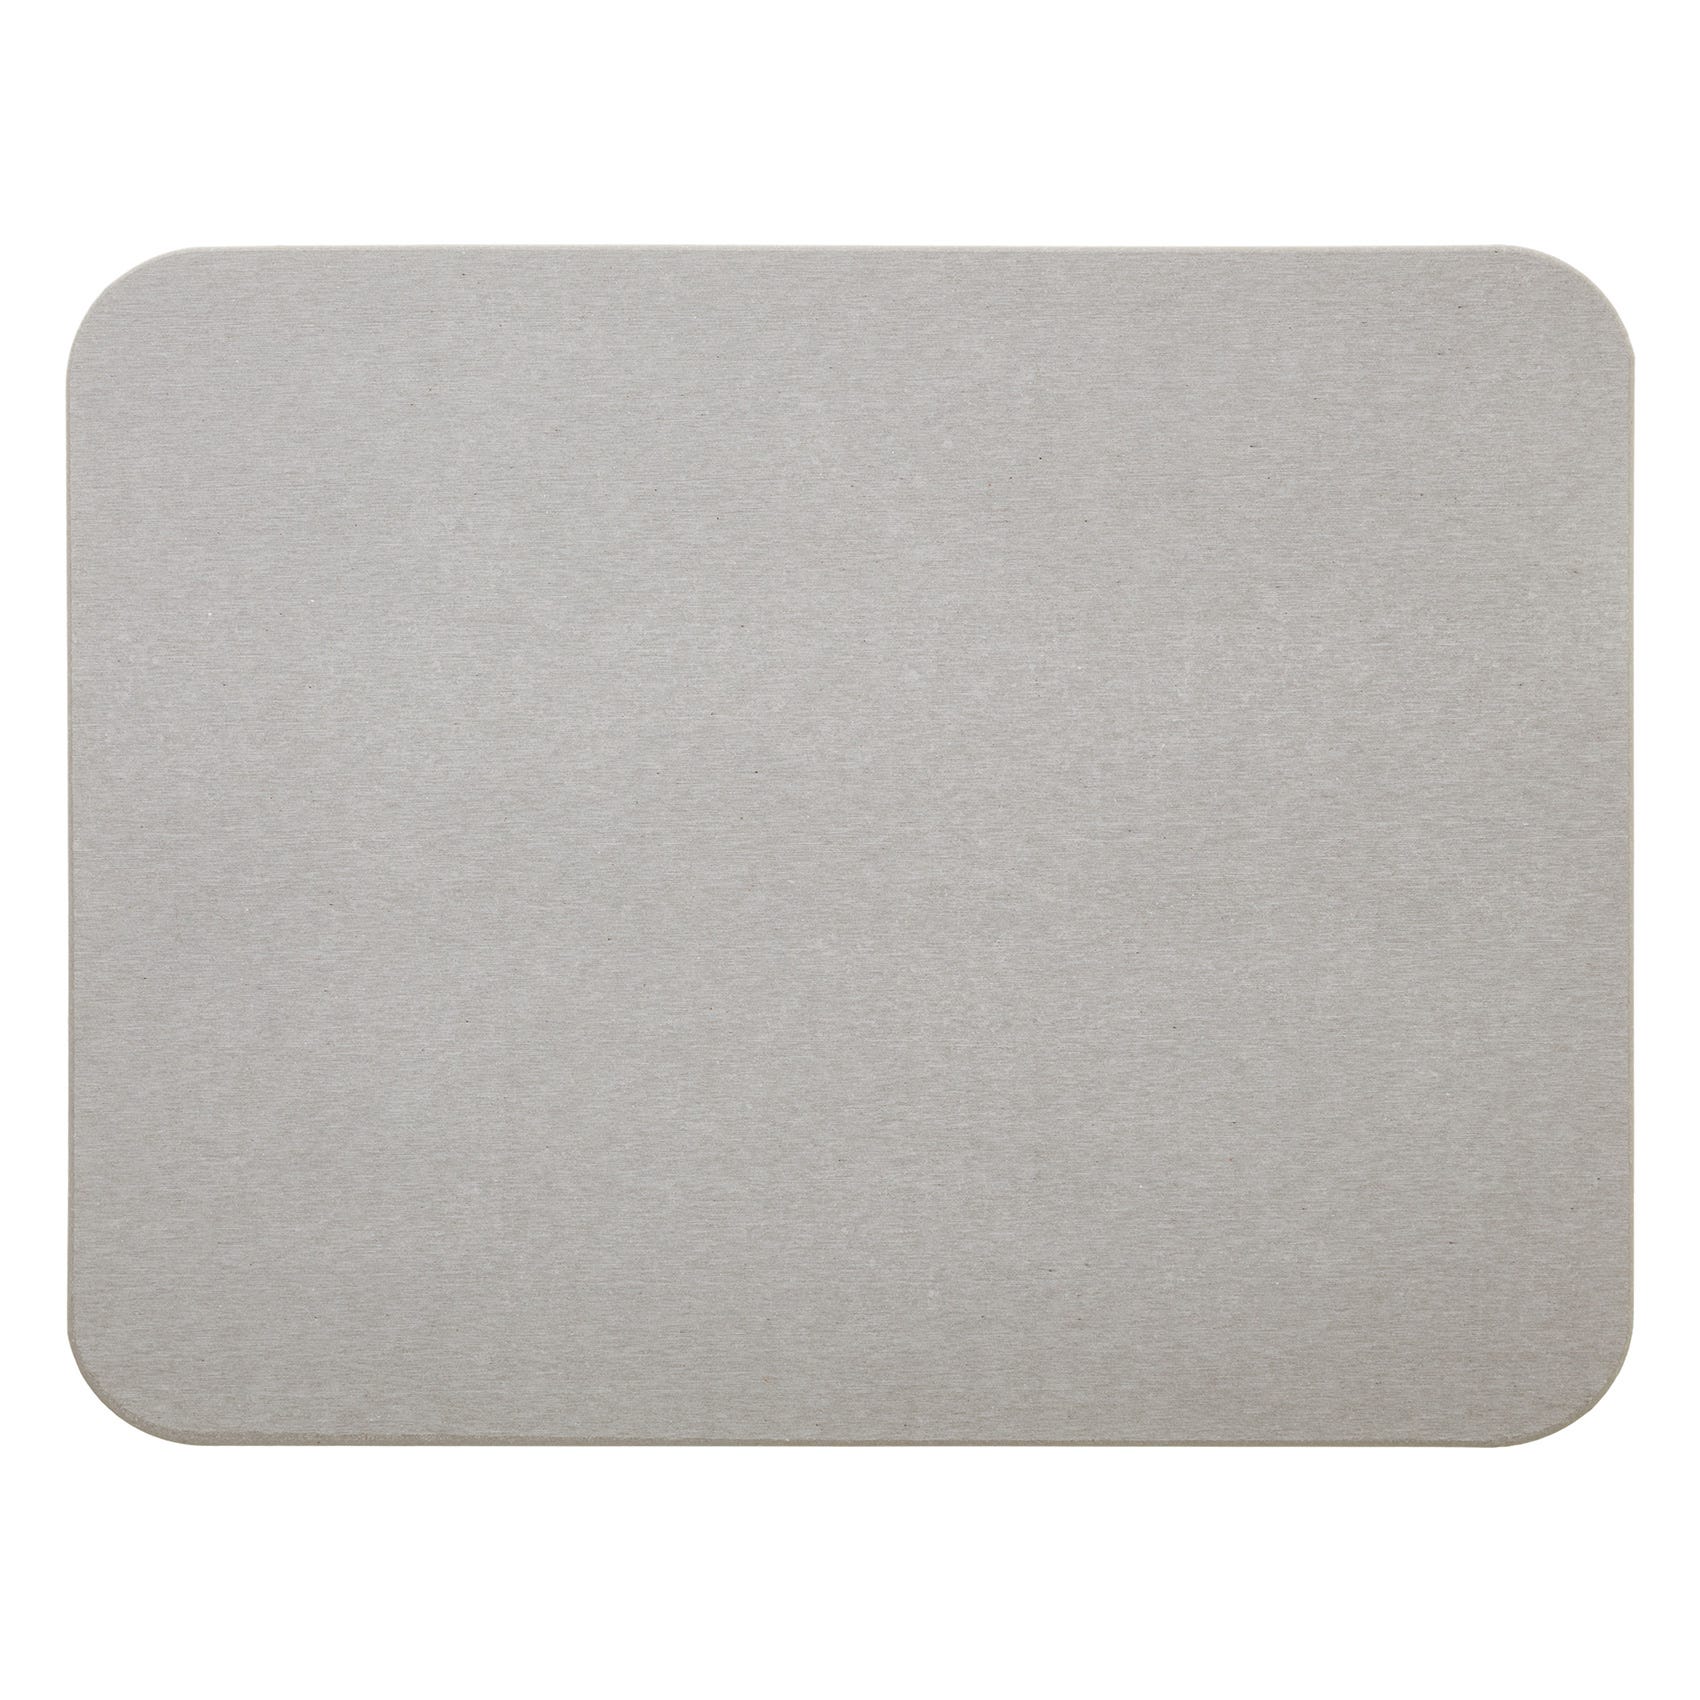 Tappetino da bagno in pietra diatomite, tappetino assorbente, tappetino da  bagno in pietra diatomitica, 35 x 45 x 1 cm, grigio